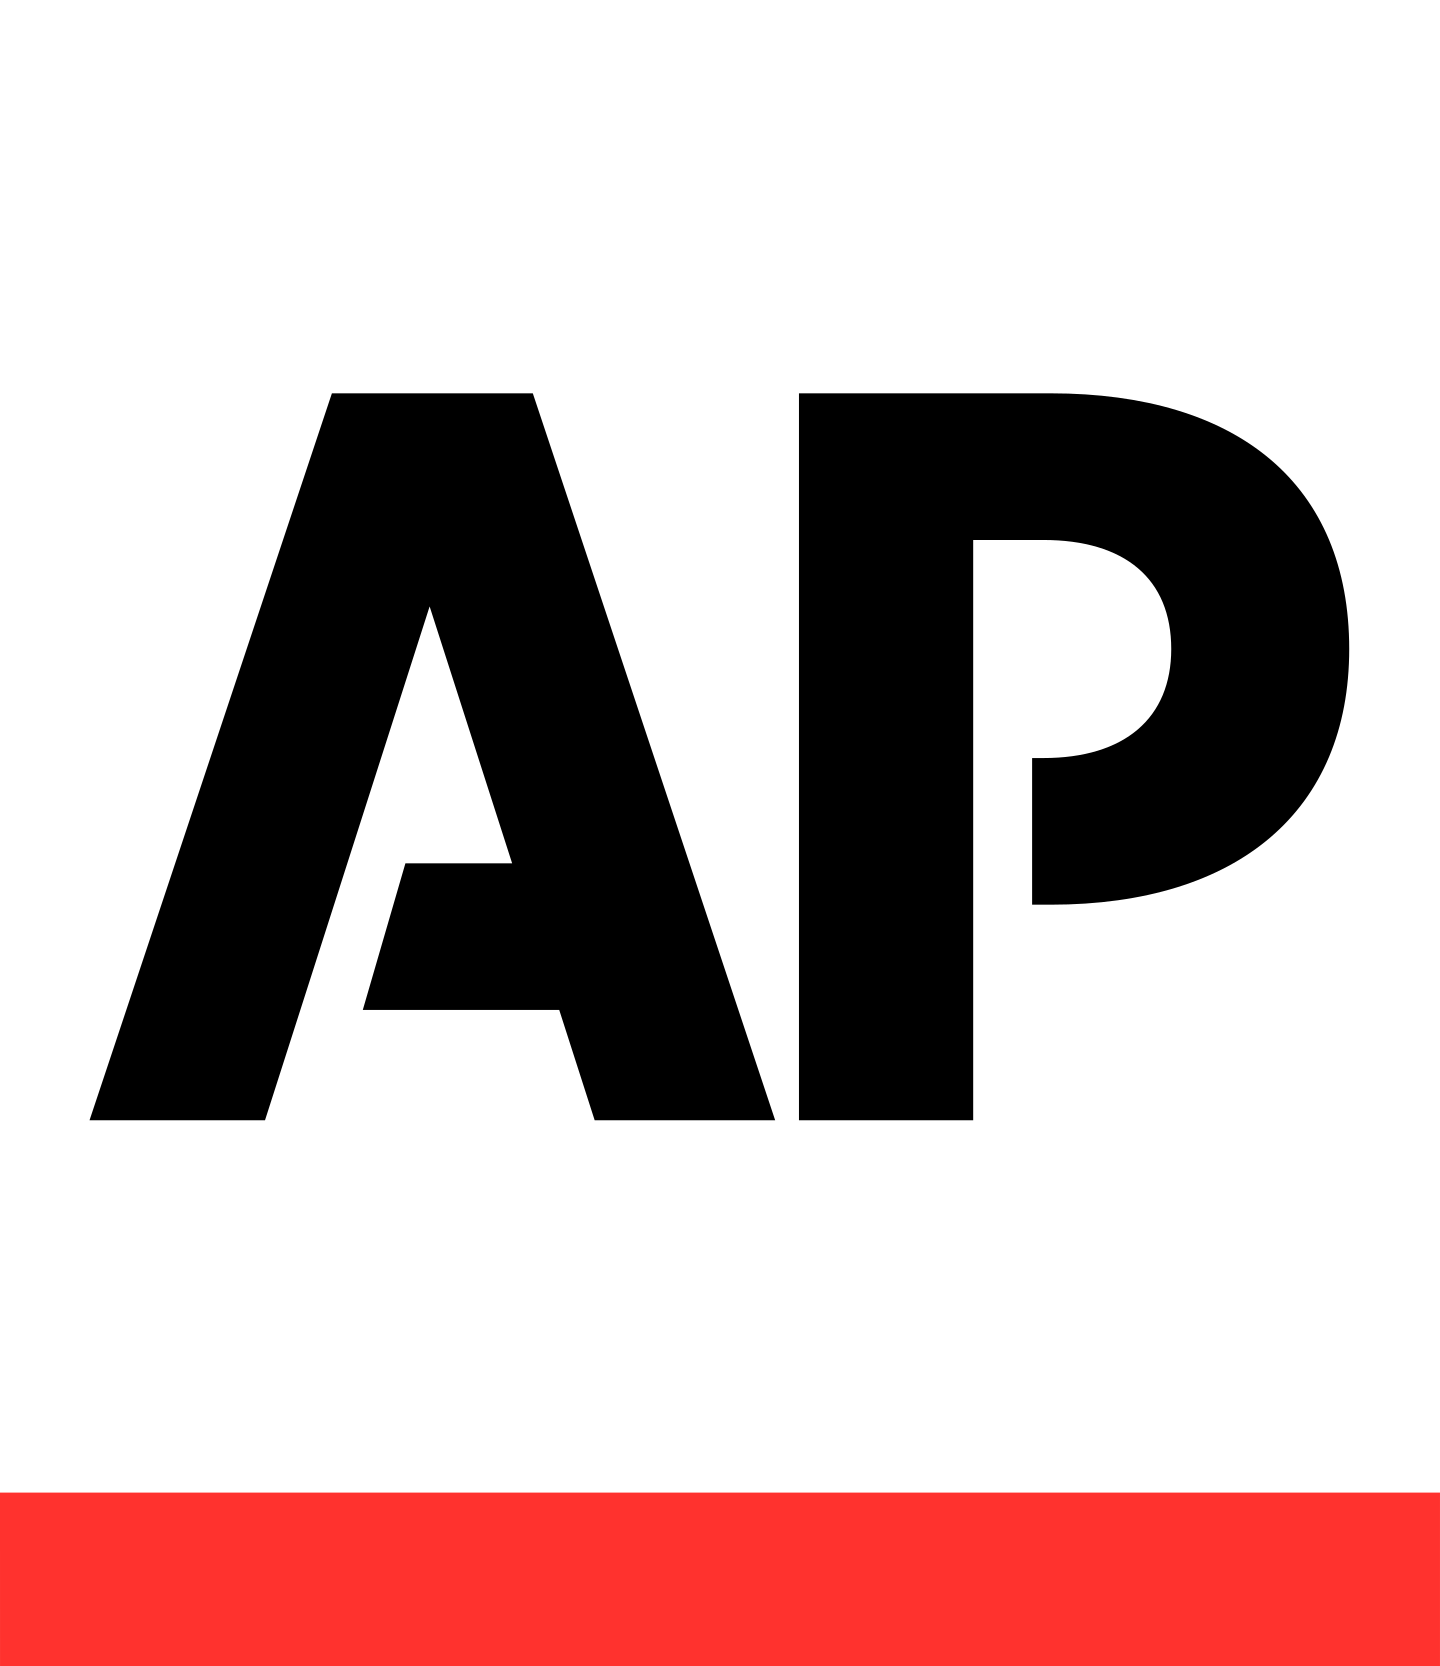 associated press logo 2 - Associated Press Logo